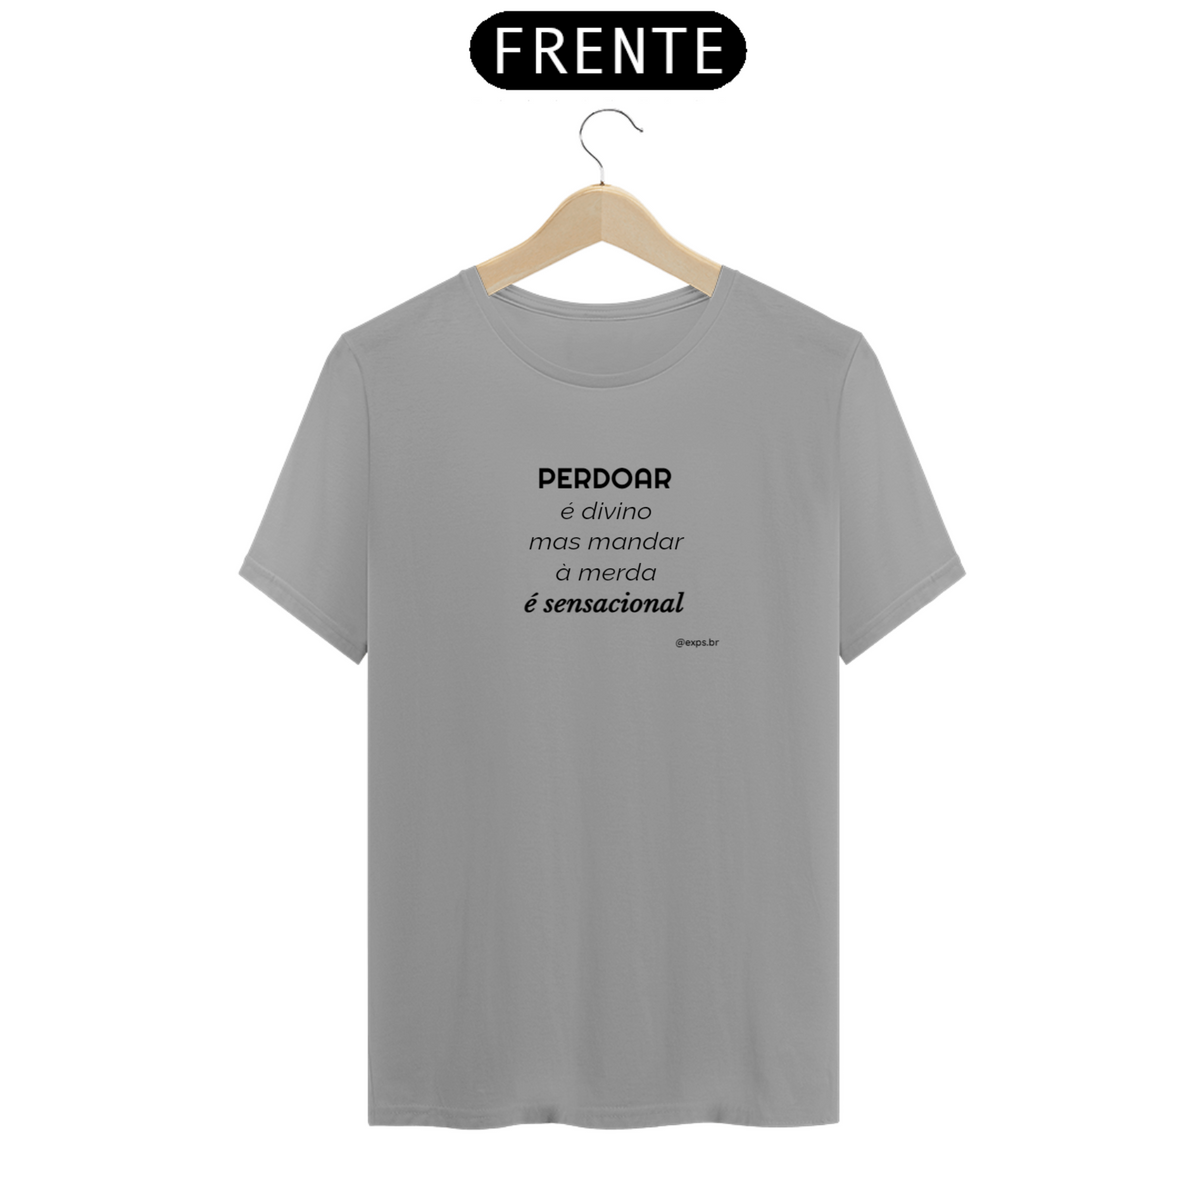 Nome do produto: Camiseta T-Shirt - Perdoar é divino - cores claras - linha Quality (C0017-A.T)